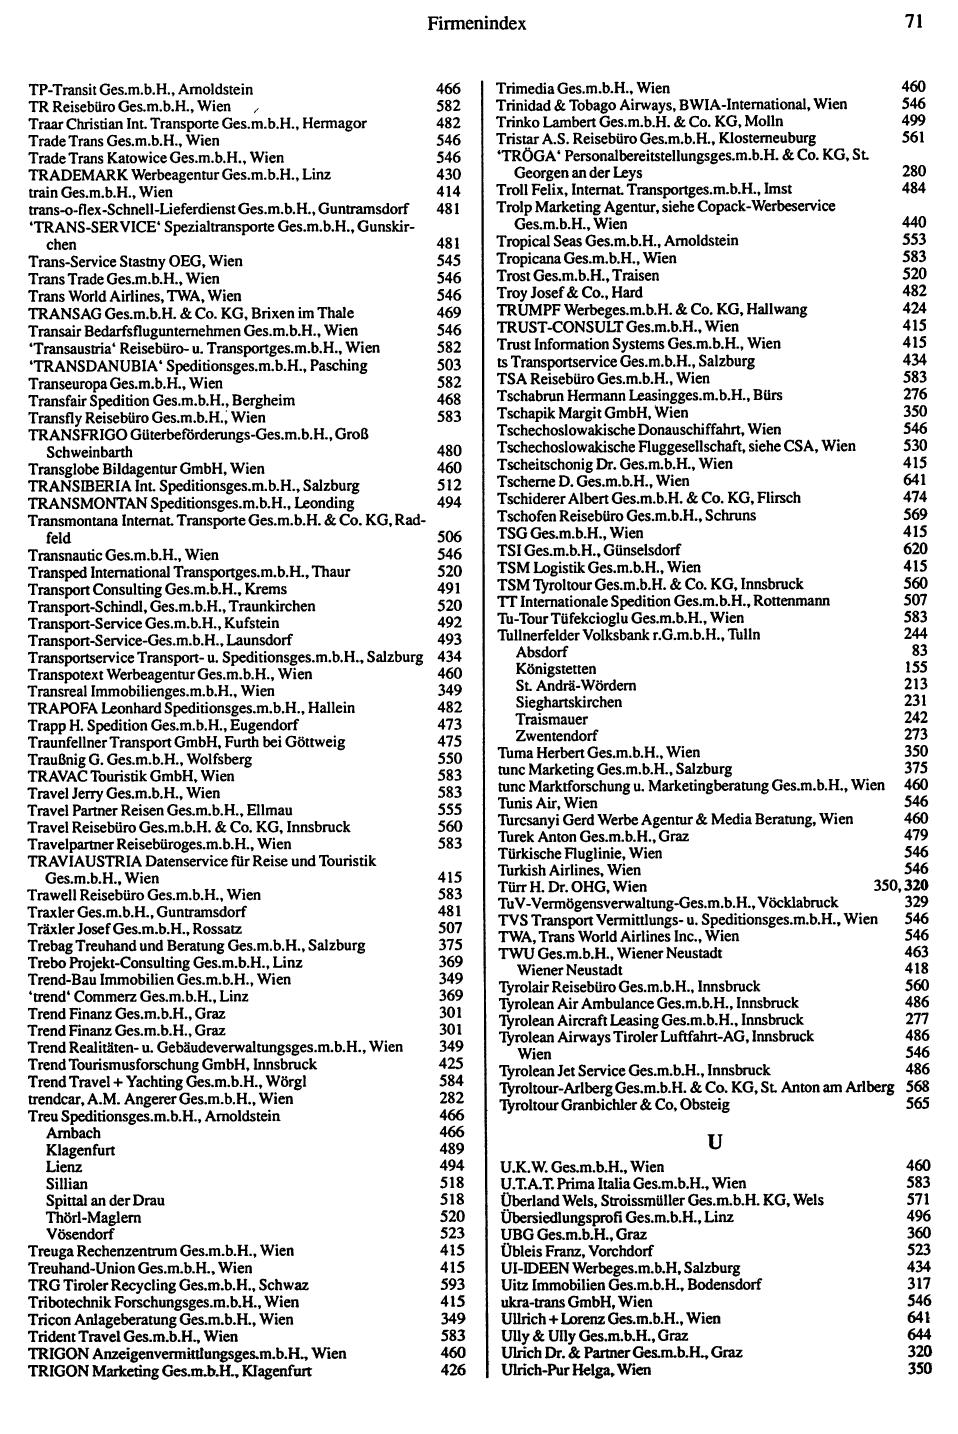 Inhaltsverzeichnis Compass 1992 - Seite 351